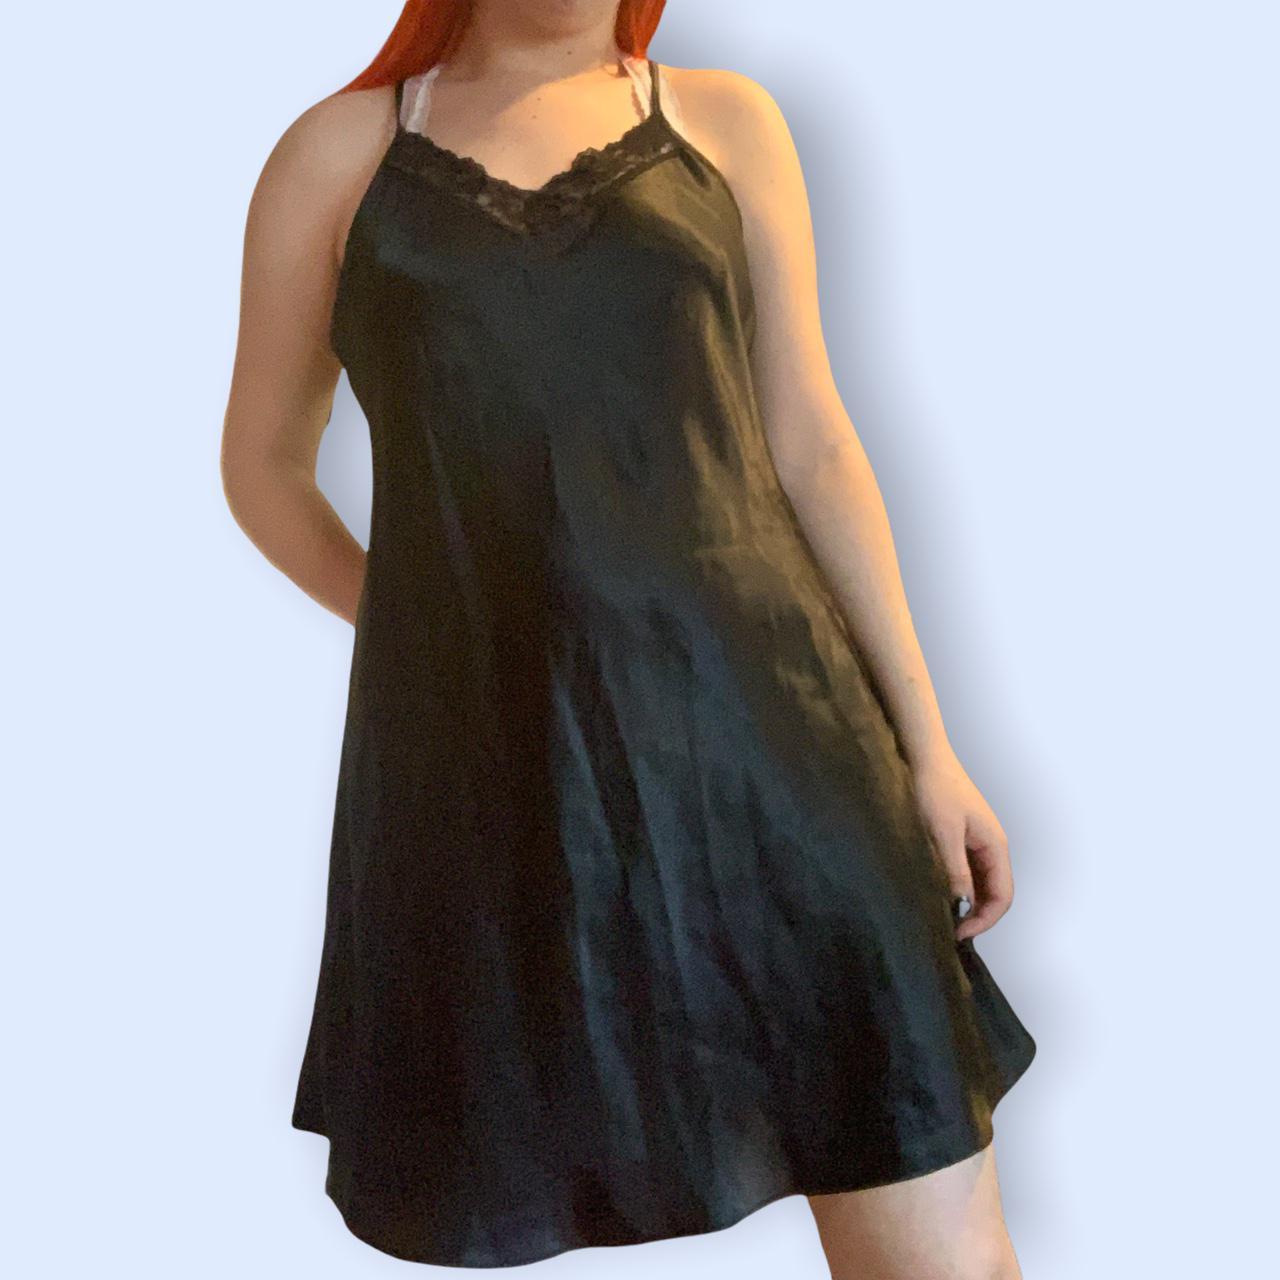 Product Image 1 - Black Lace Slip Dress 
Measurements: